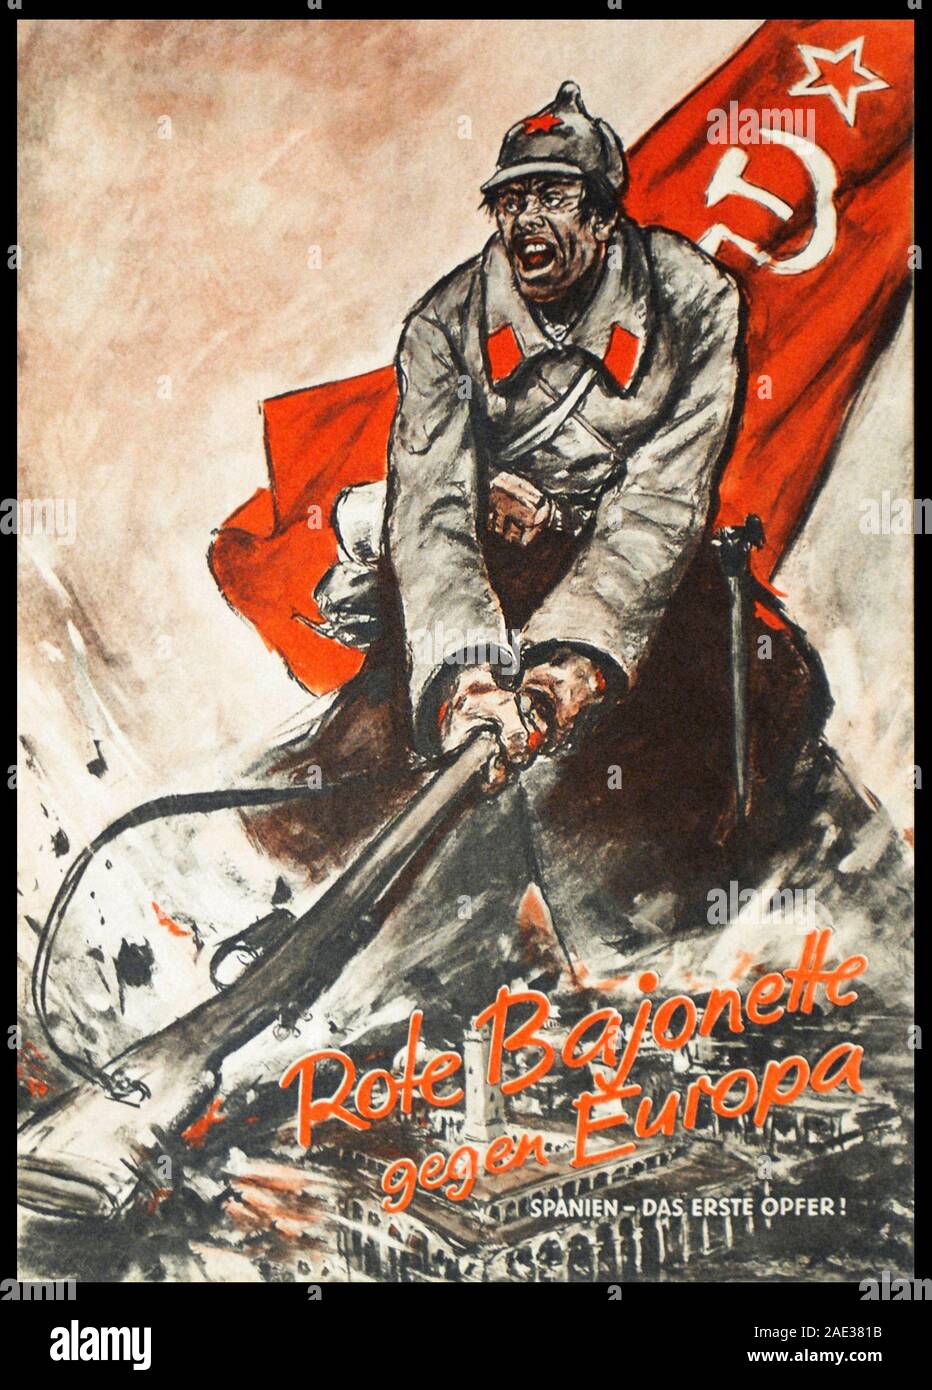 Red Bajonette gegen Europa. Spanien - das erste Opfer. Deutsche anti-сommunist Poster. Die Zeit des Spanischen Bürgerkrieges, 1936-1939 Stockfoto